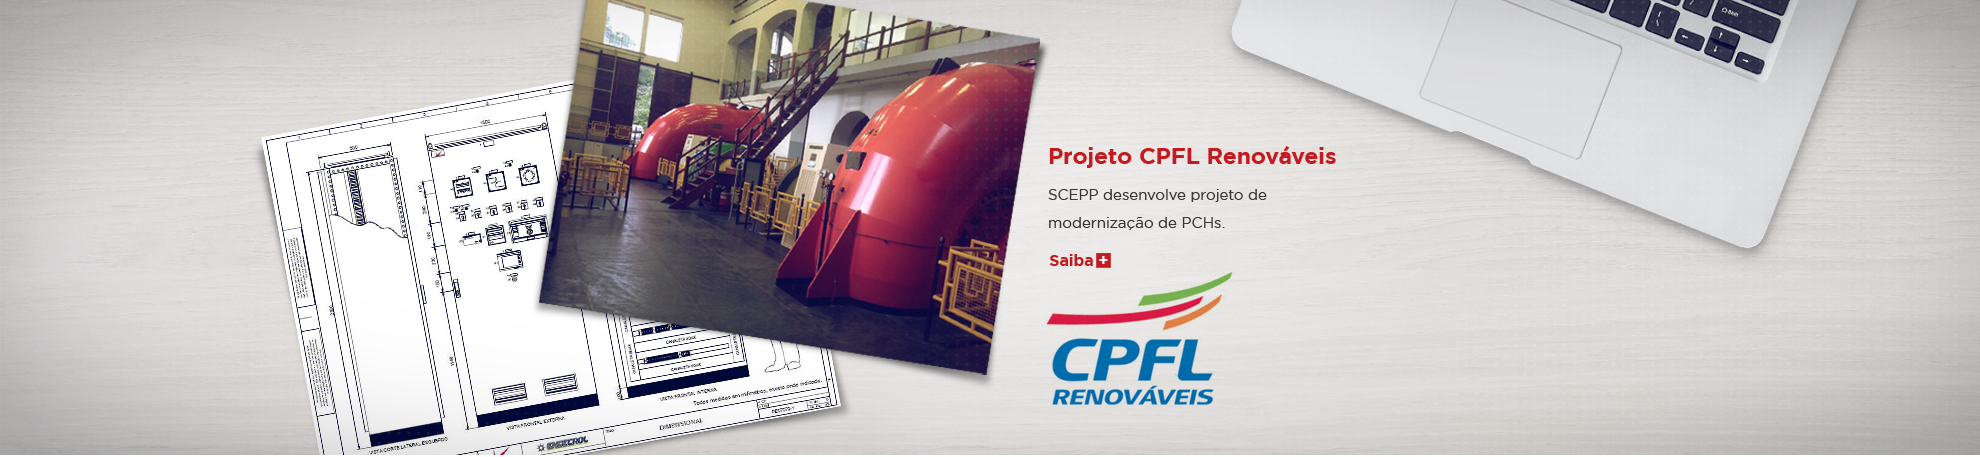 Projeto CPFL Renováveis